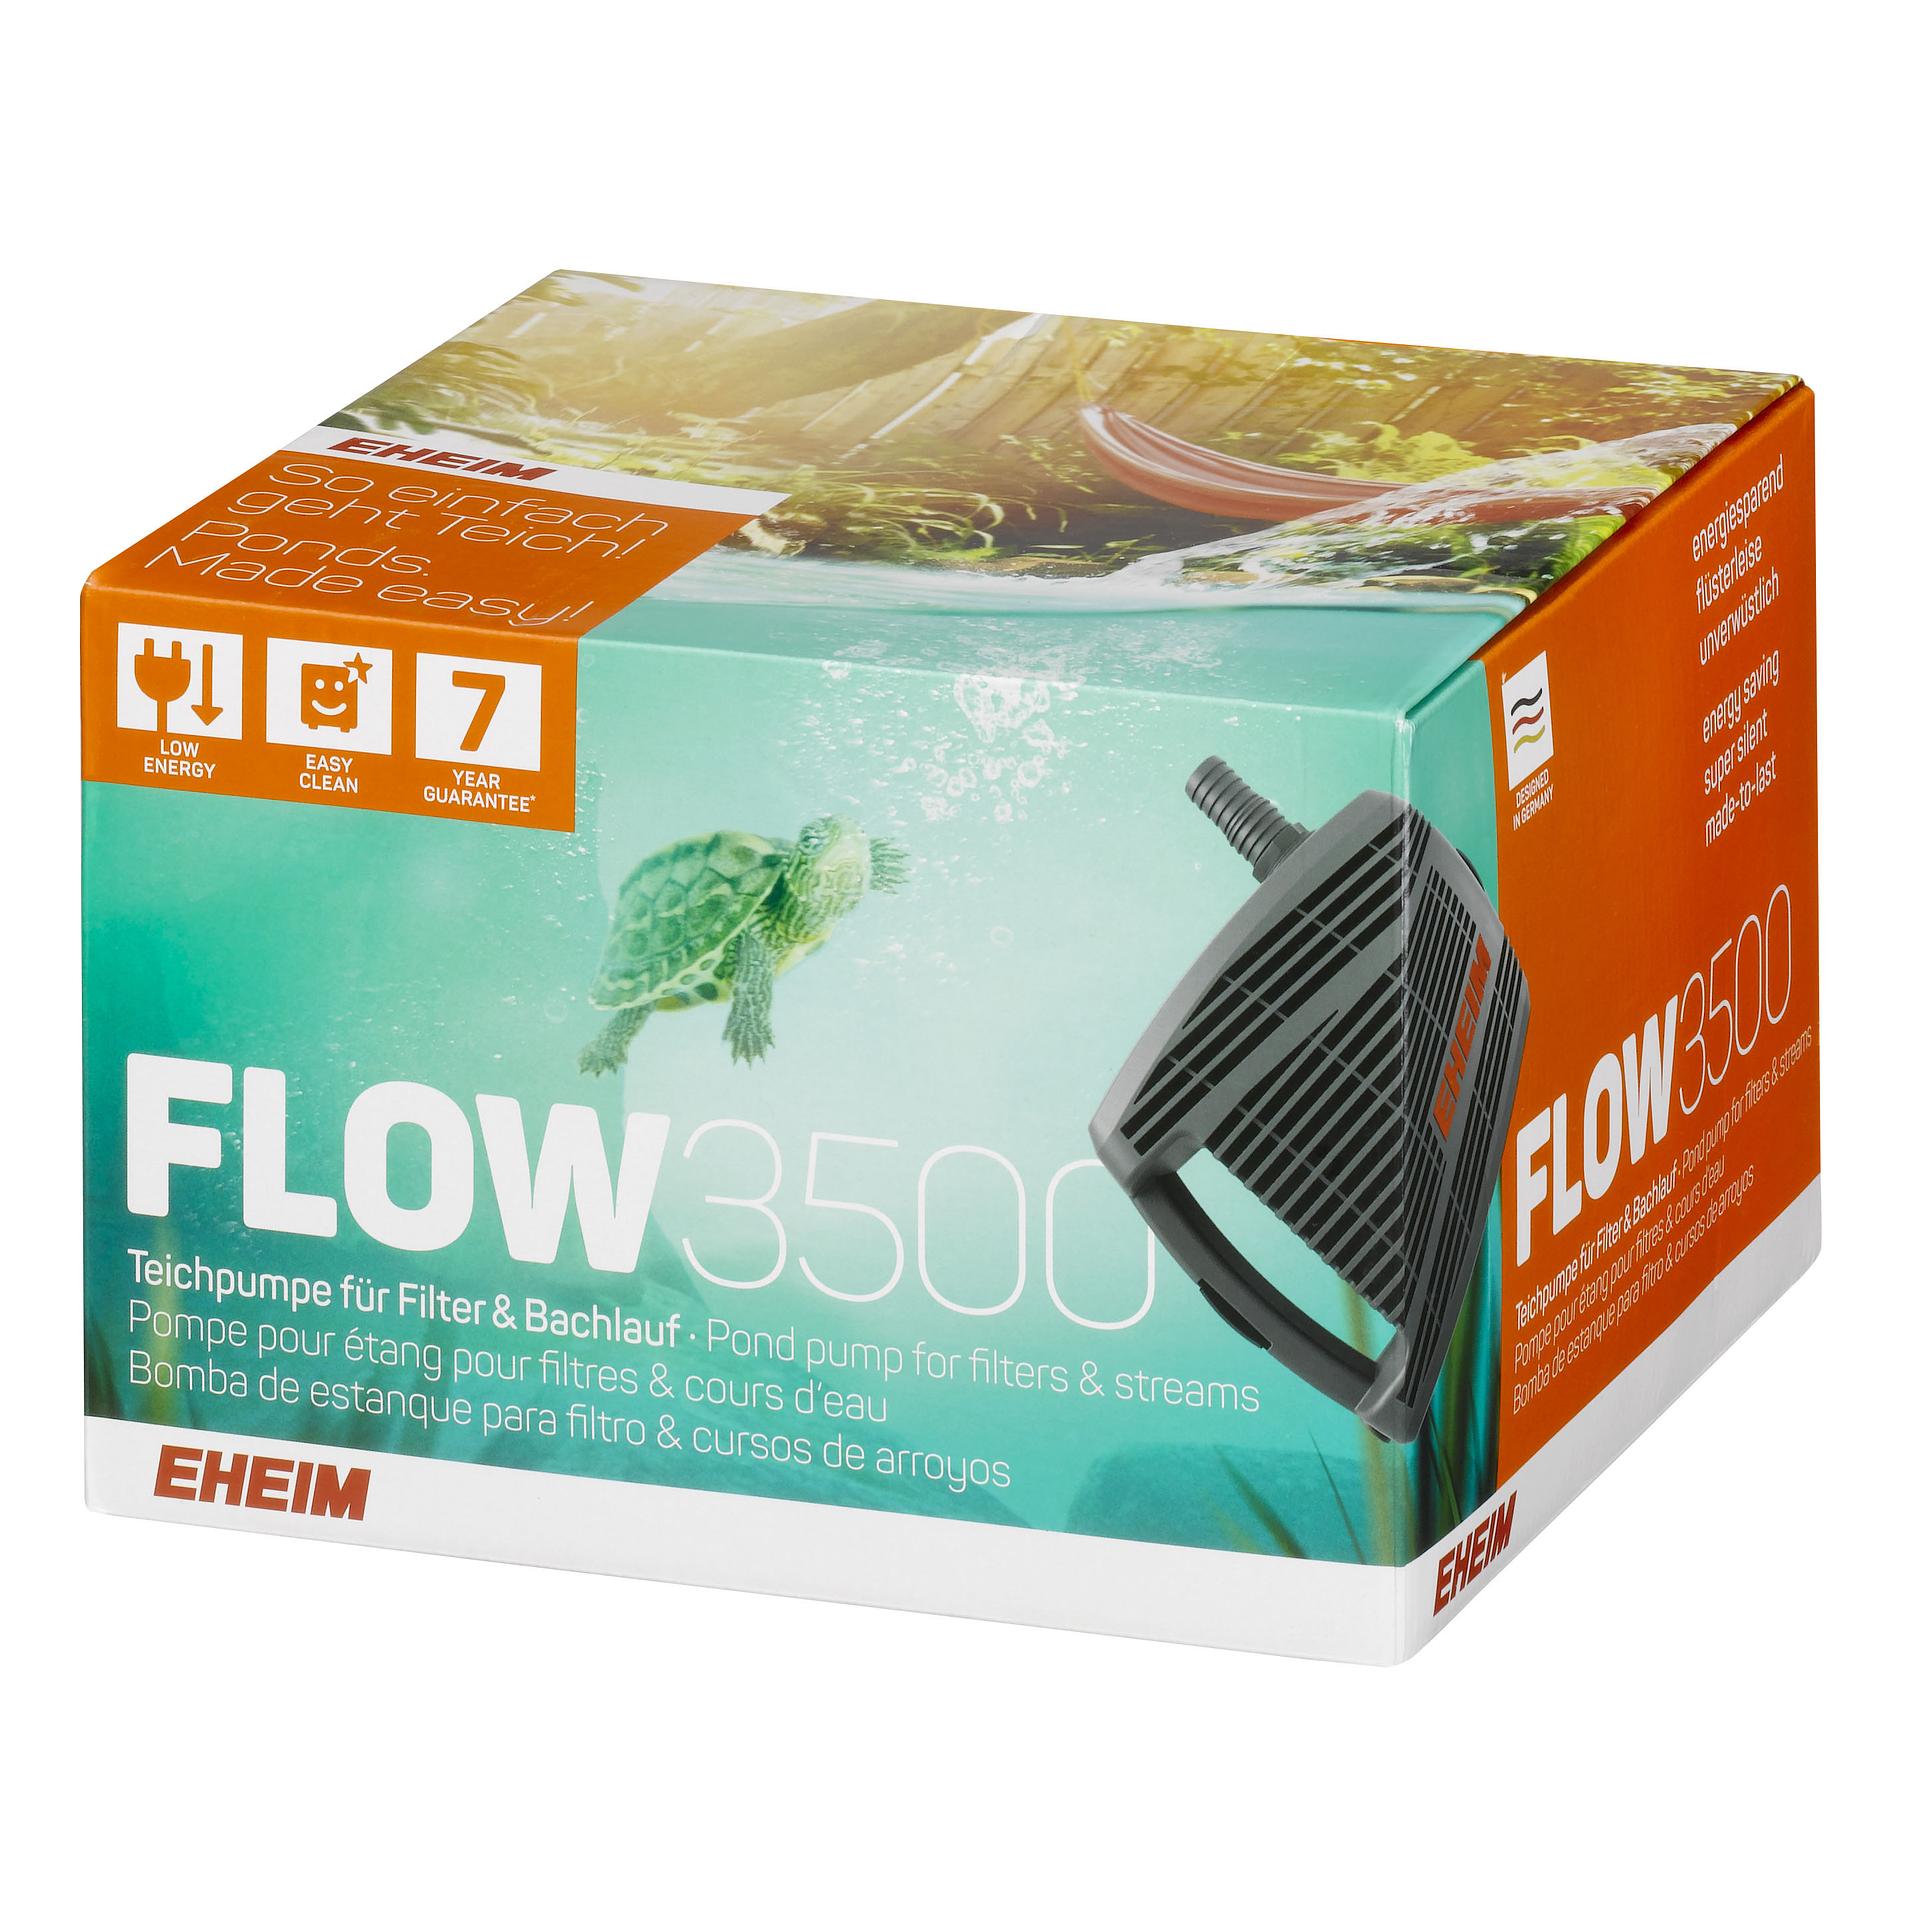 FLOW Teichpumpe für Filter & Bachlauf